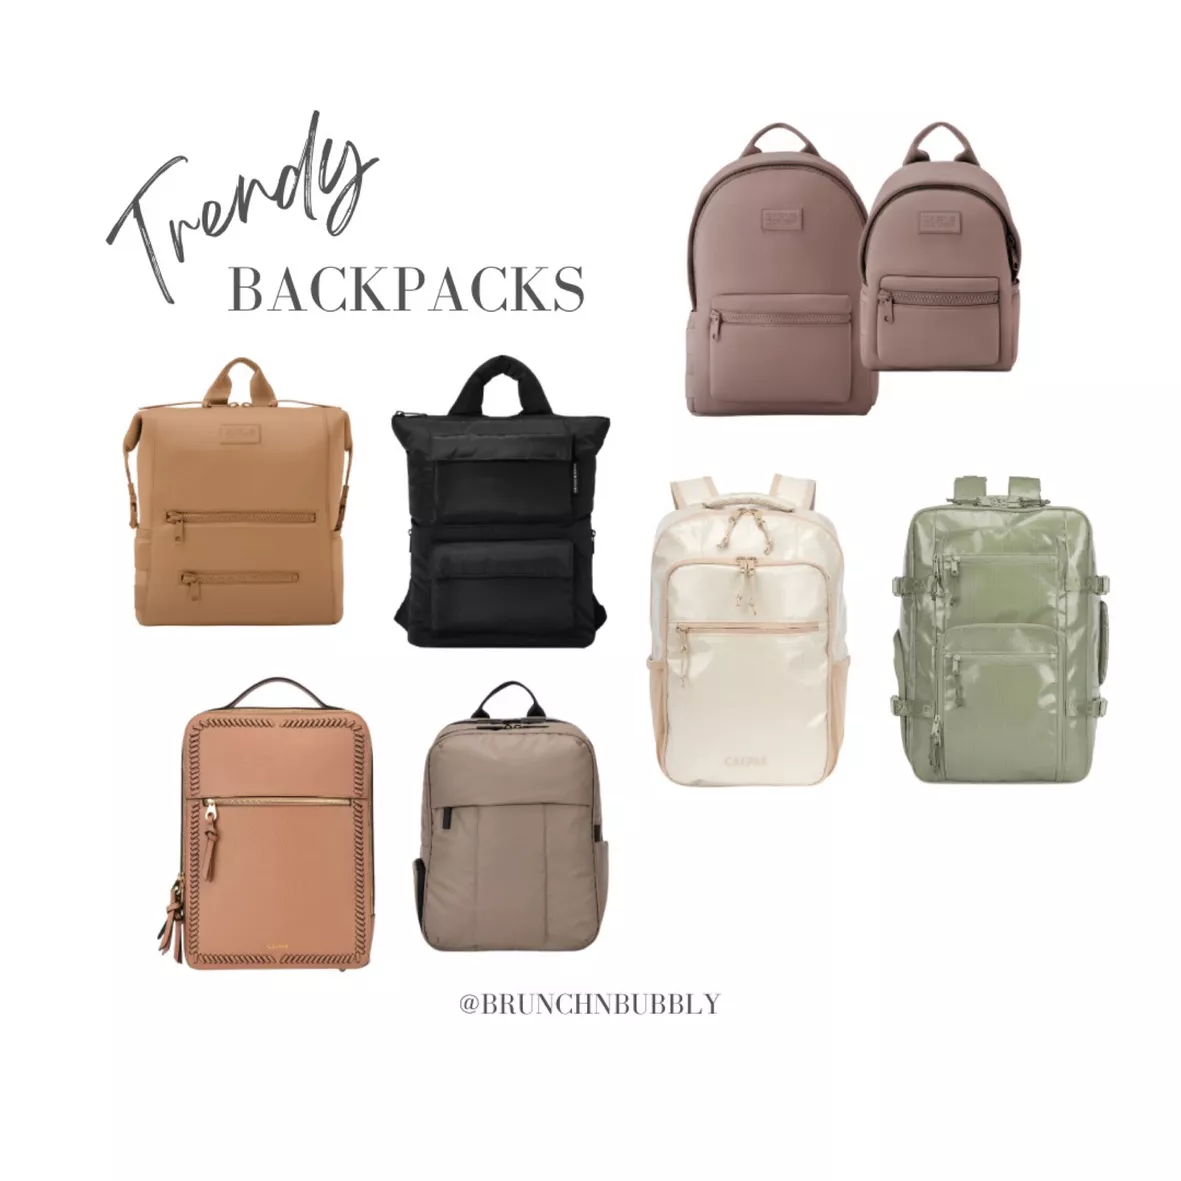 Dakota Neoprene Backpack curated on LTK